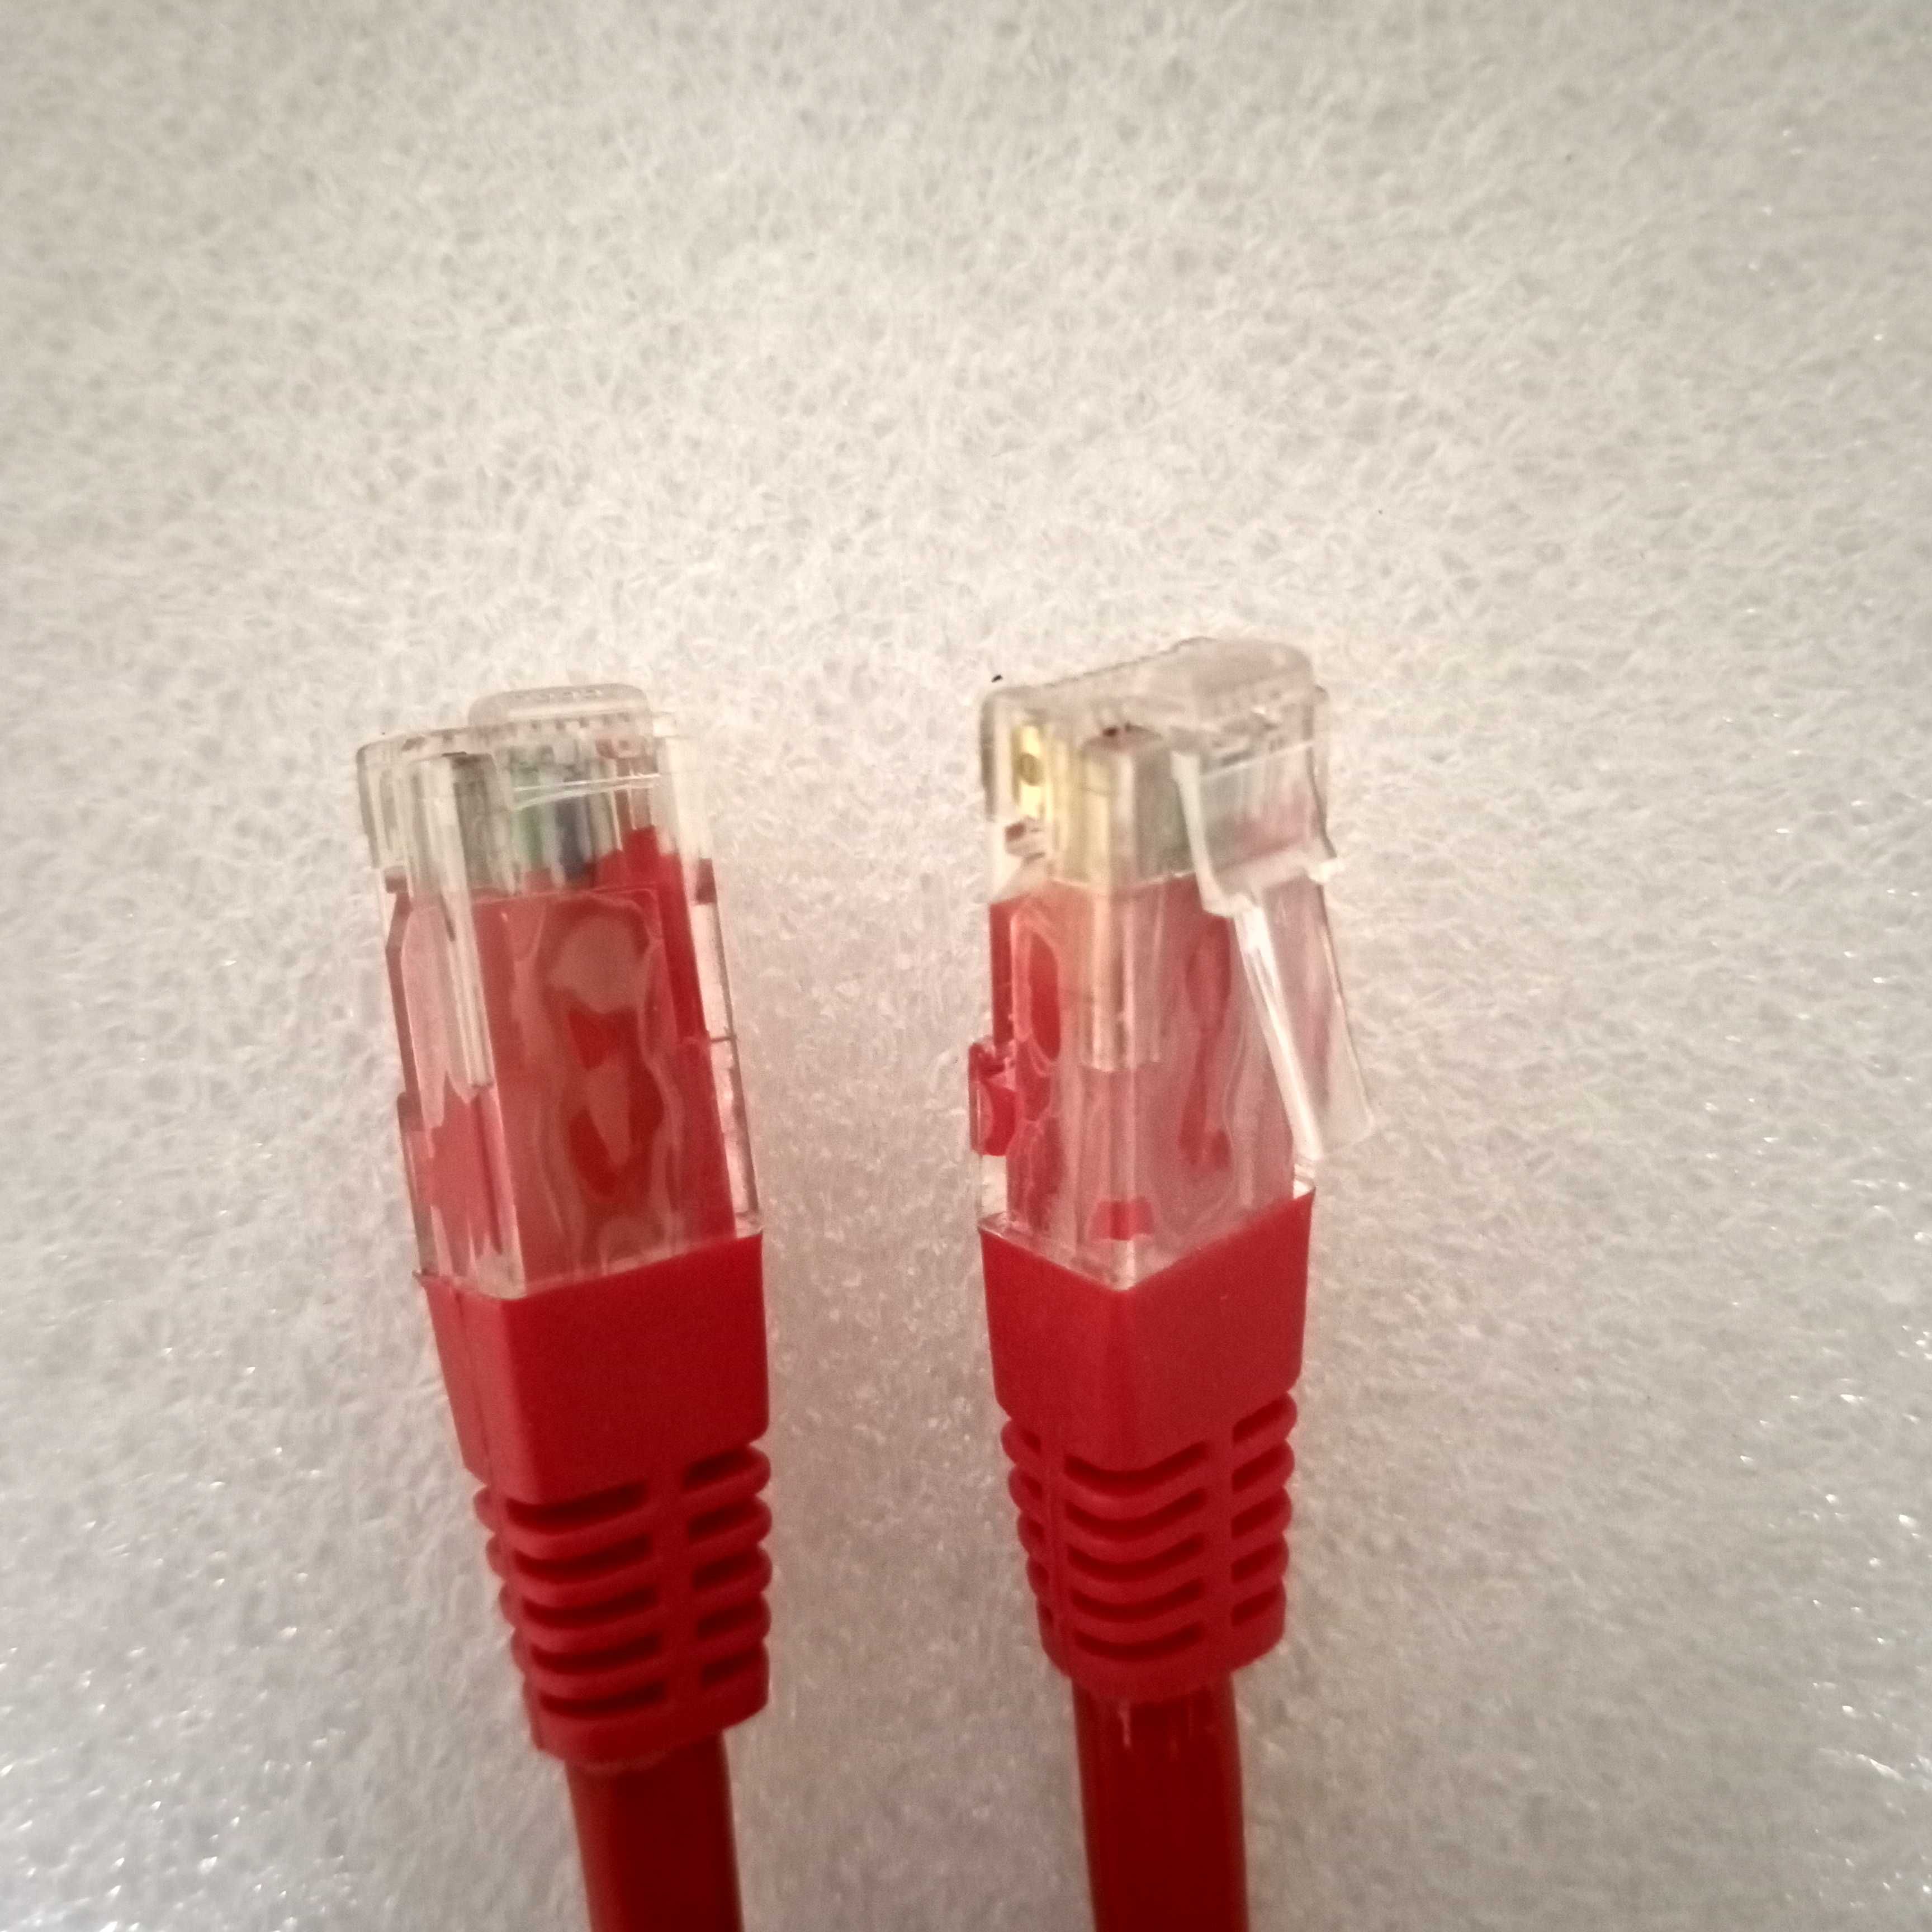 Якісний мереживий кабель, rj45, LAN, Ethernet. 5 метрів.